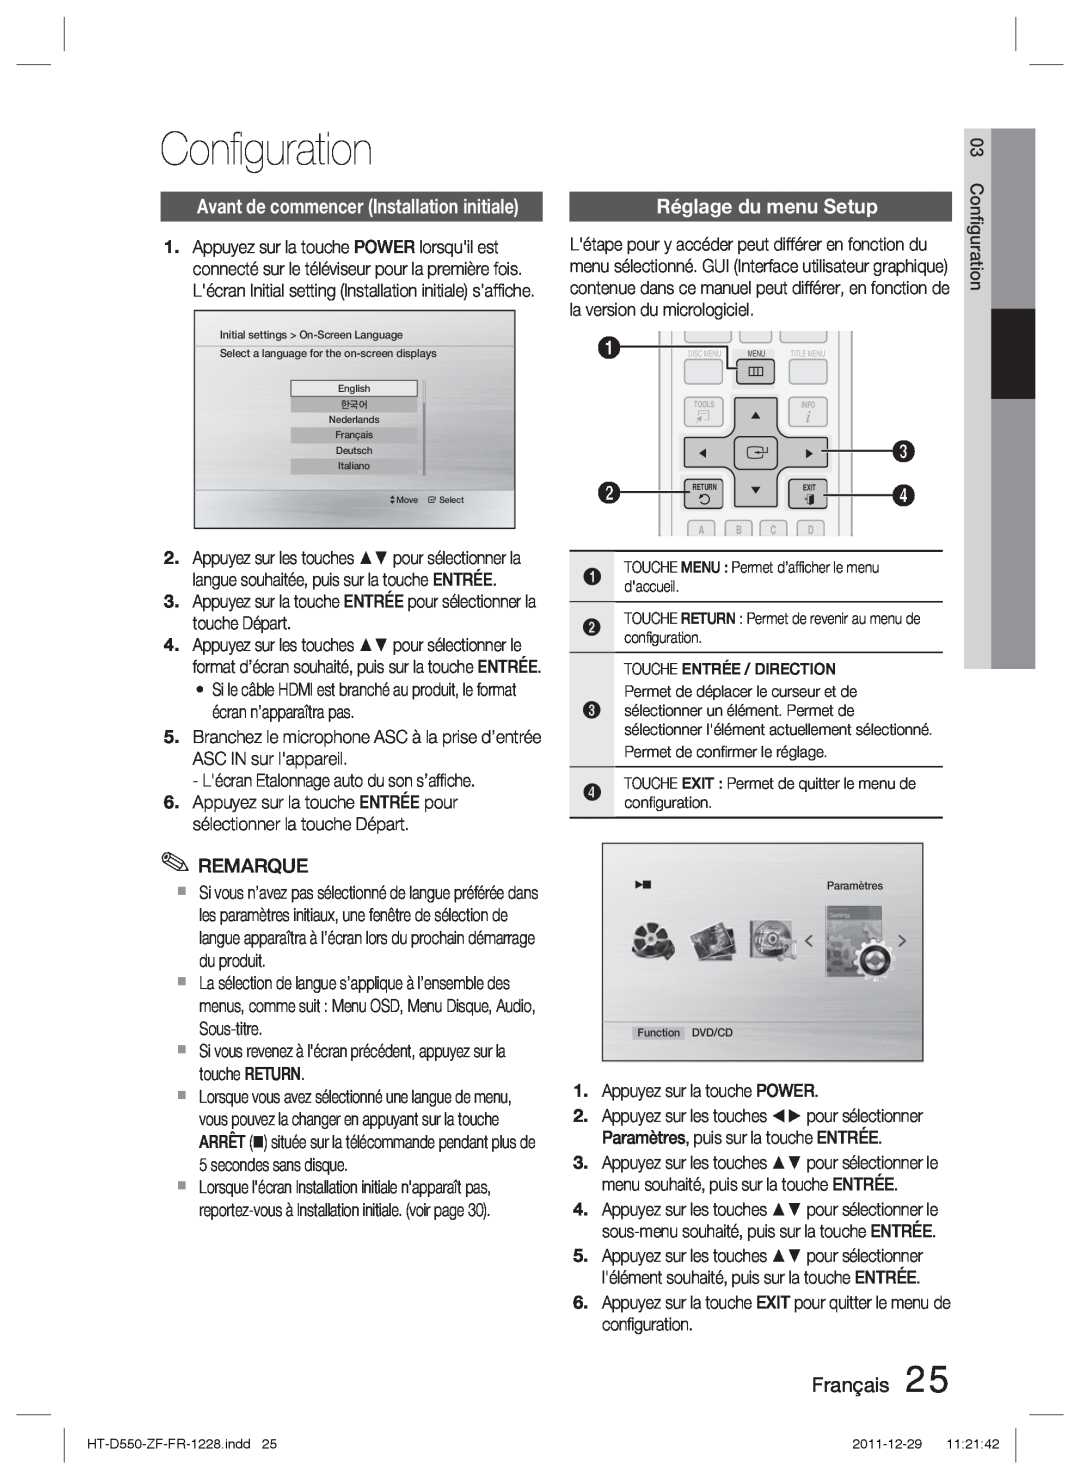 Samsung HT-D555/ZF, HT-D550/XN, HT-D555/TK manual Conﬁguration, Réglage du menu Setup, la version du micrologiciel, Français 